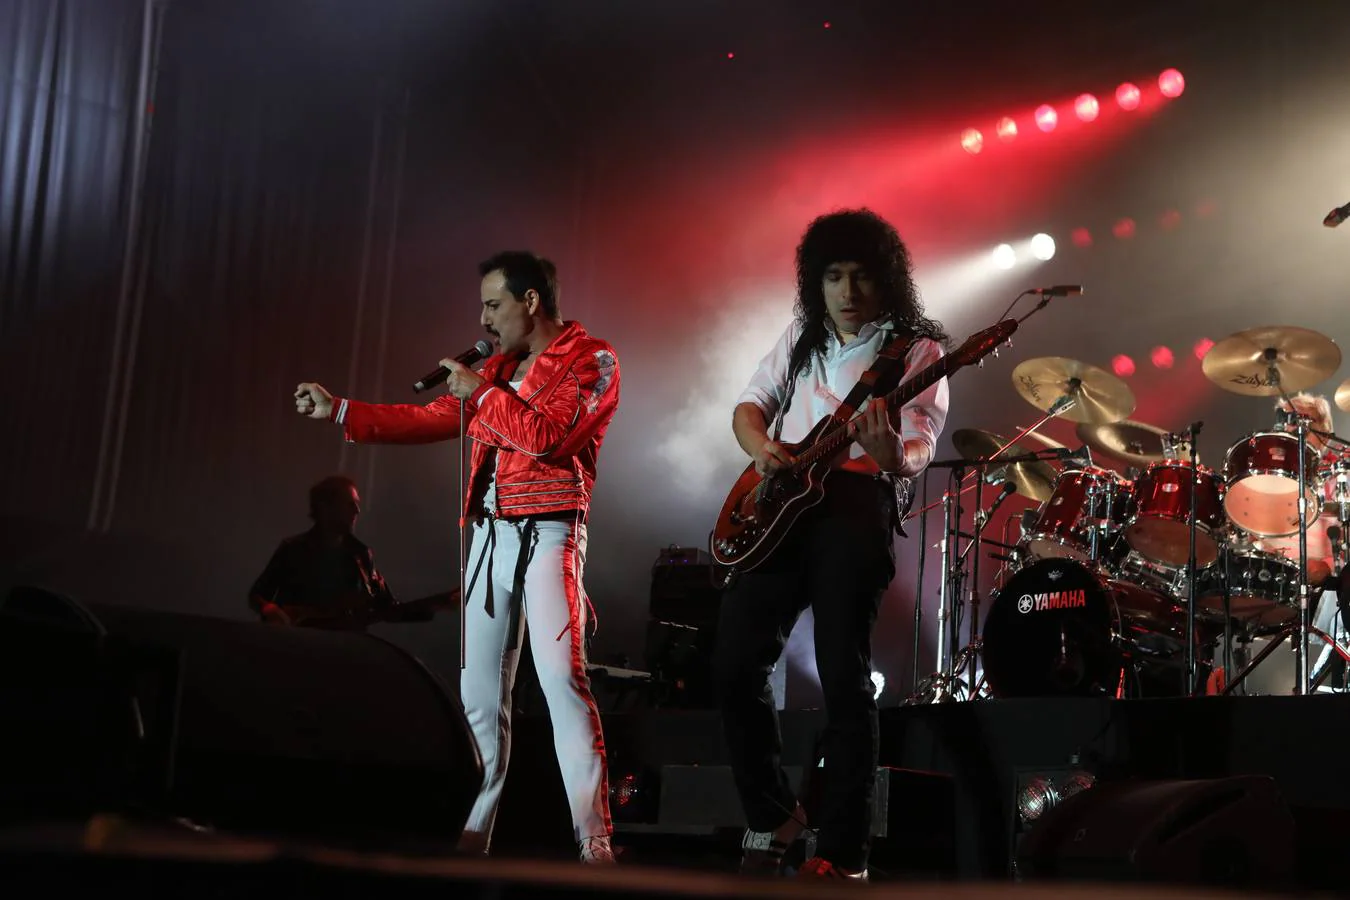 Las imágenes del concierto de Save the Queen en el Concert